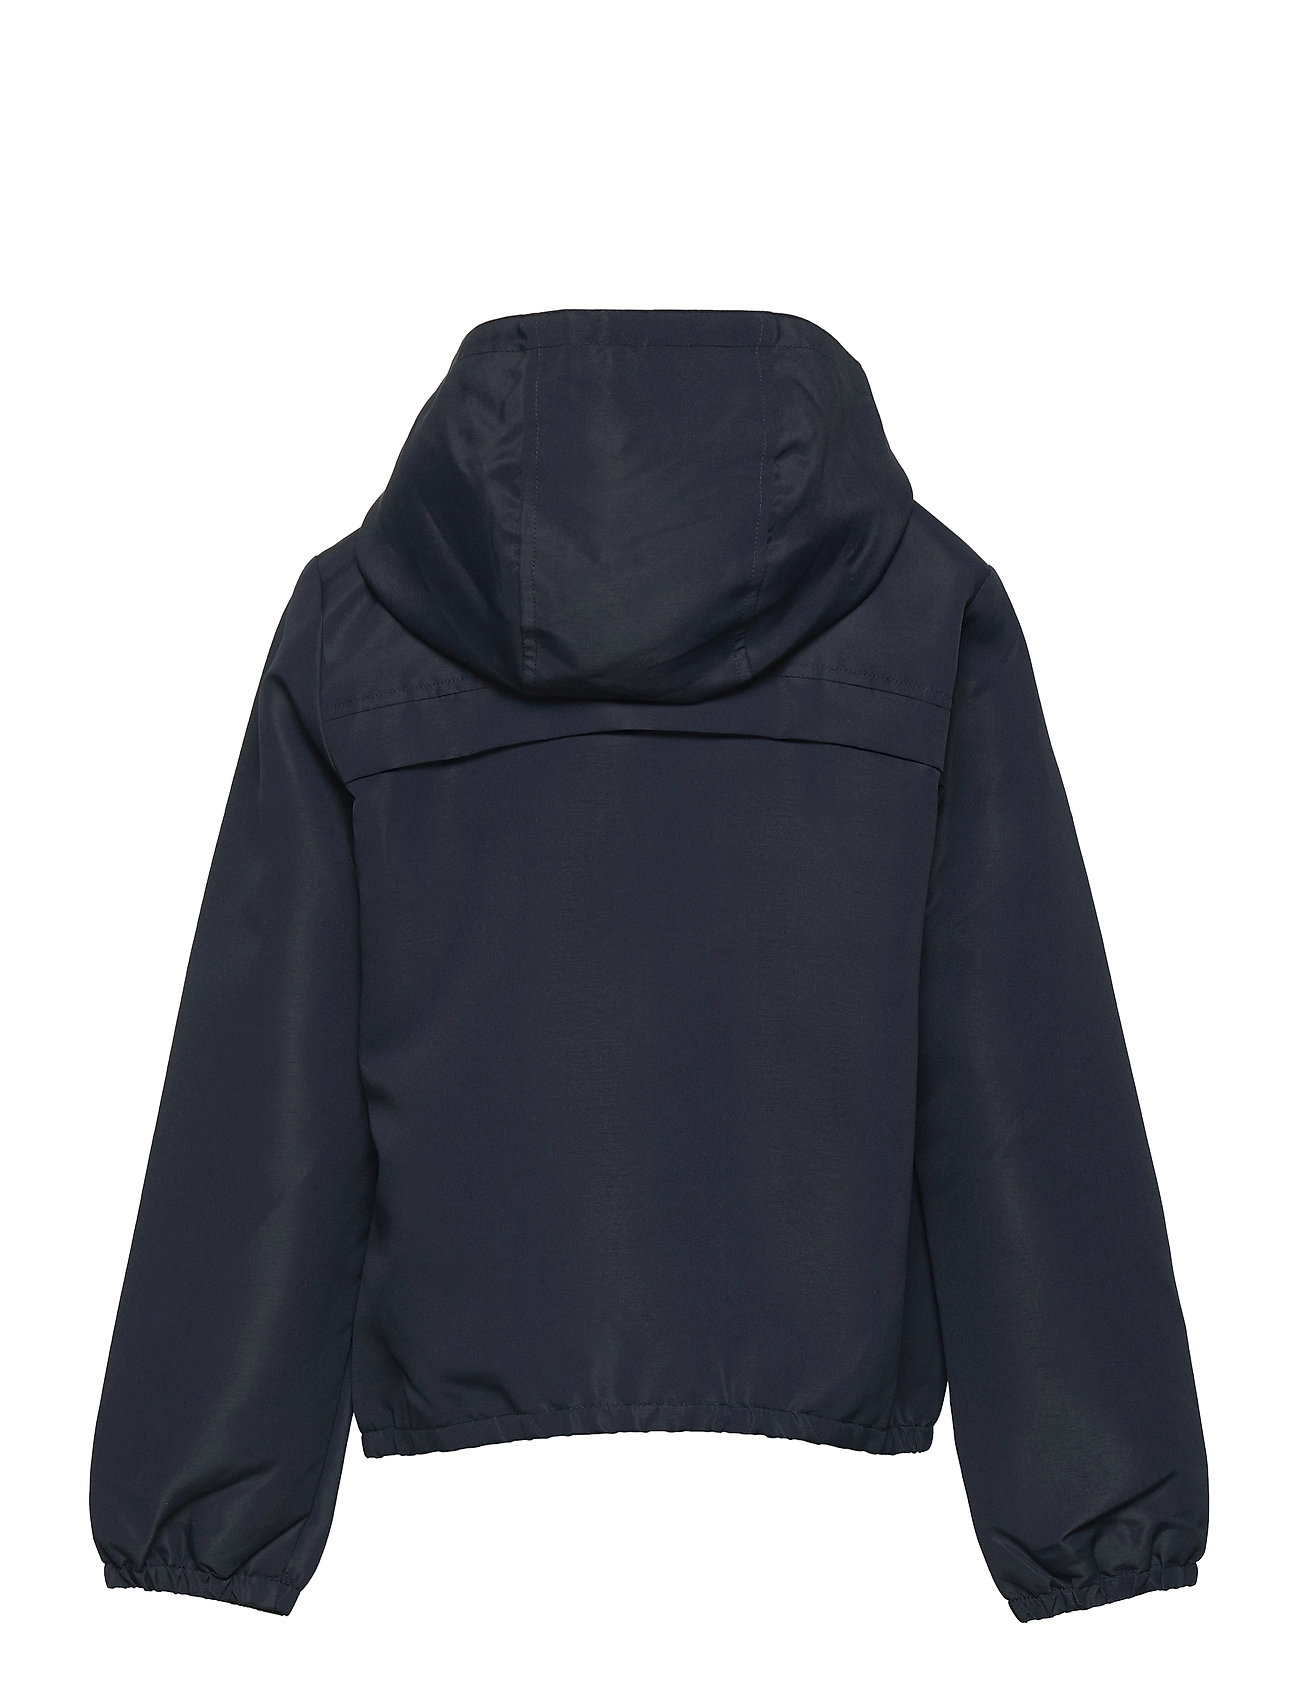 Nknmizan Jacket Camp Outerwear Jackets & Coats Windbreaker Blå Name It